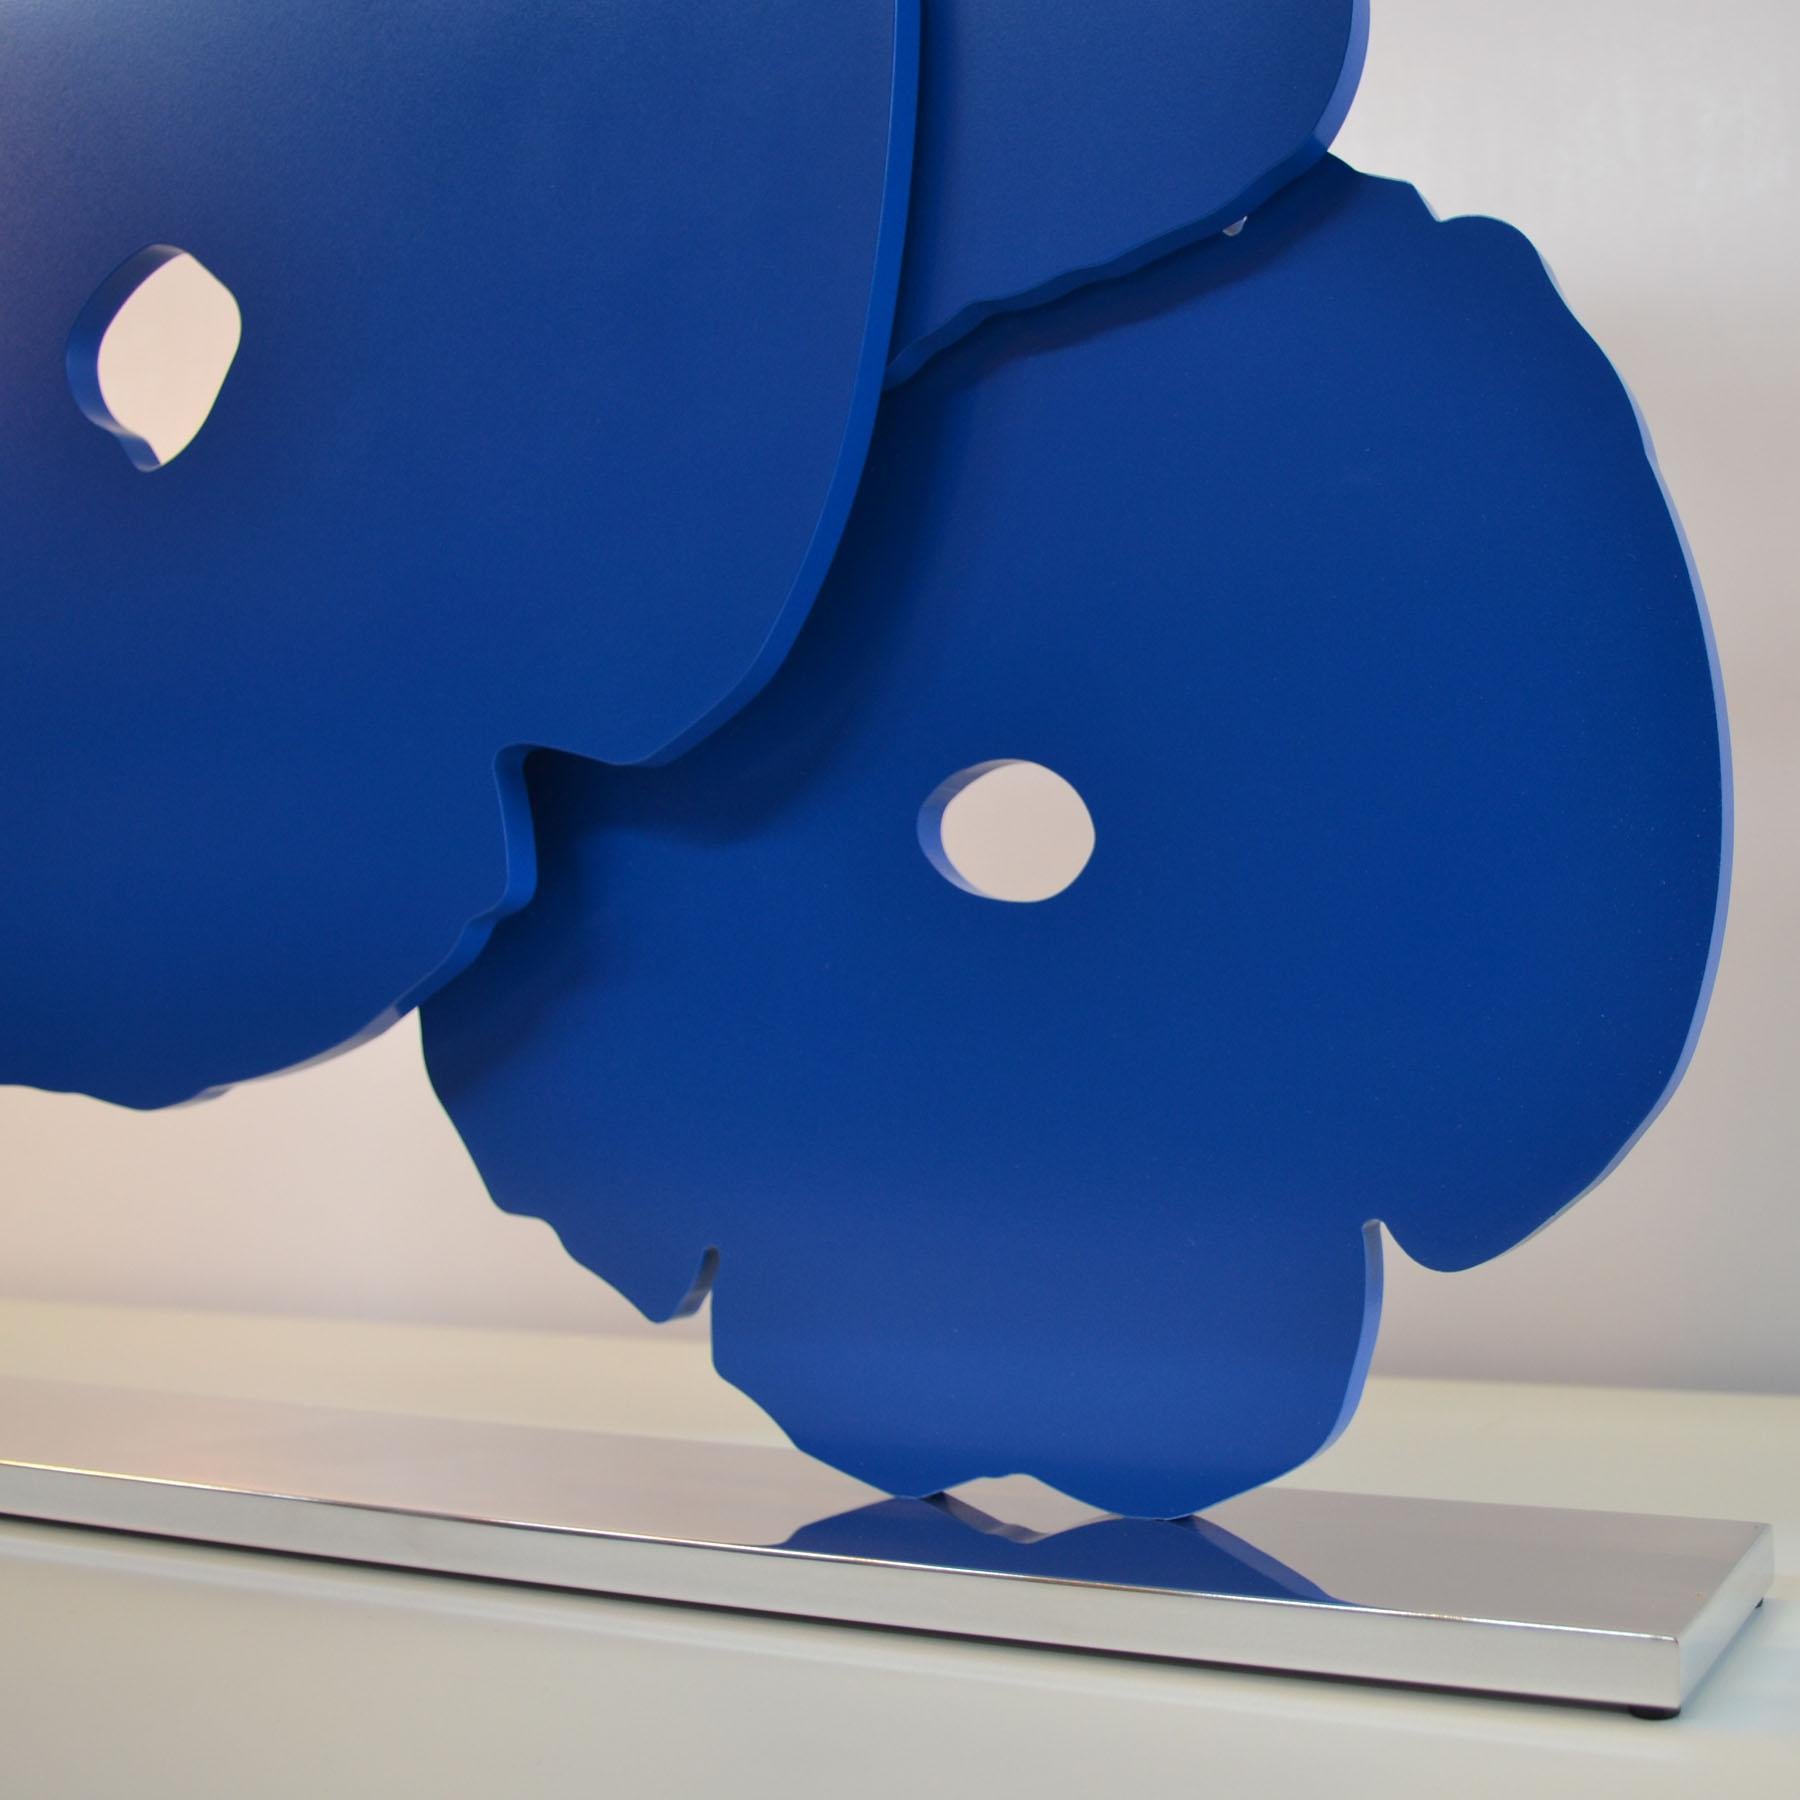 Donald Sultan, Coquelicots bleus
Contemporain, 21ème siècle, Sculpture, Coquelicots, Fleur, Bleu
Aluminium peint sur base en aluminium poli
Edition de 25
62 x 61 x 7,6 cm (24.5 x 24.2 x 3 in.)
Signée, datée, numérotée et titrée, accompagnée d'un